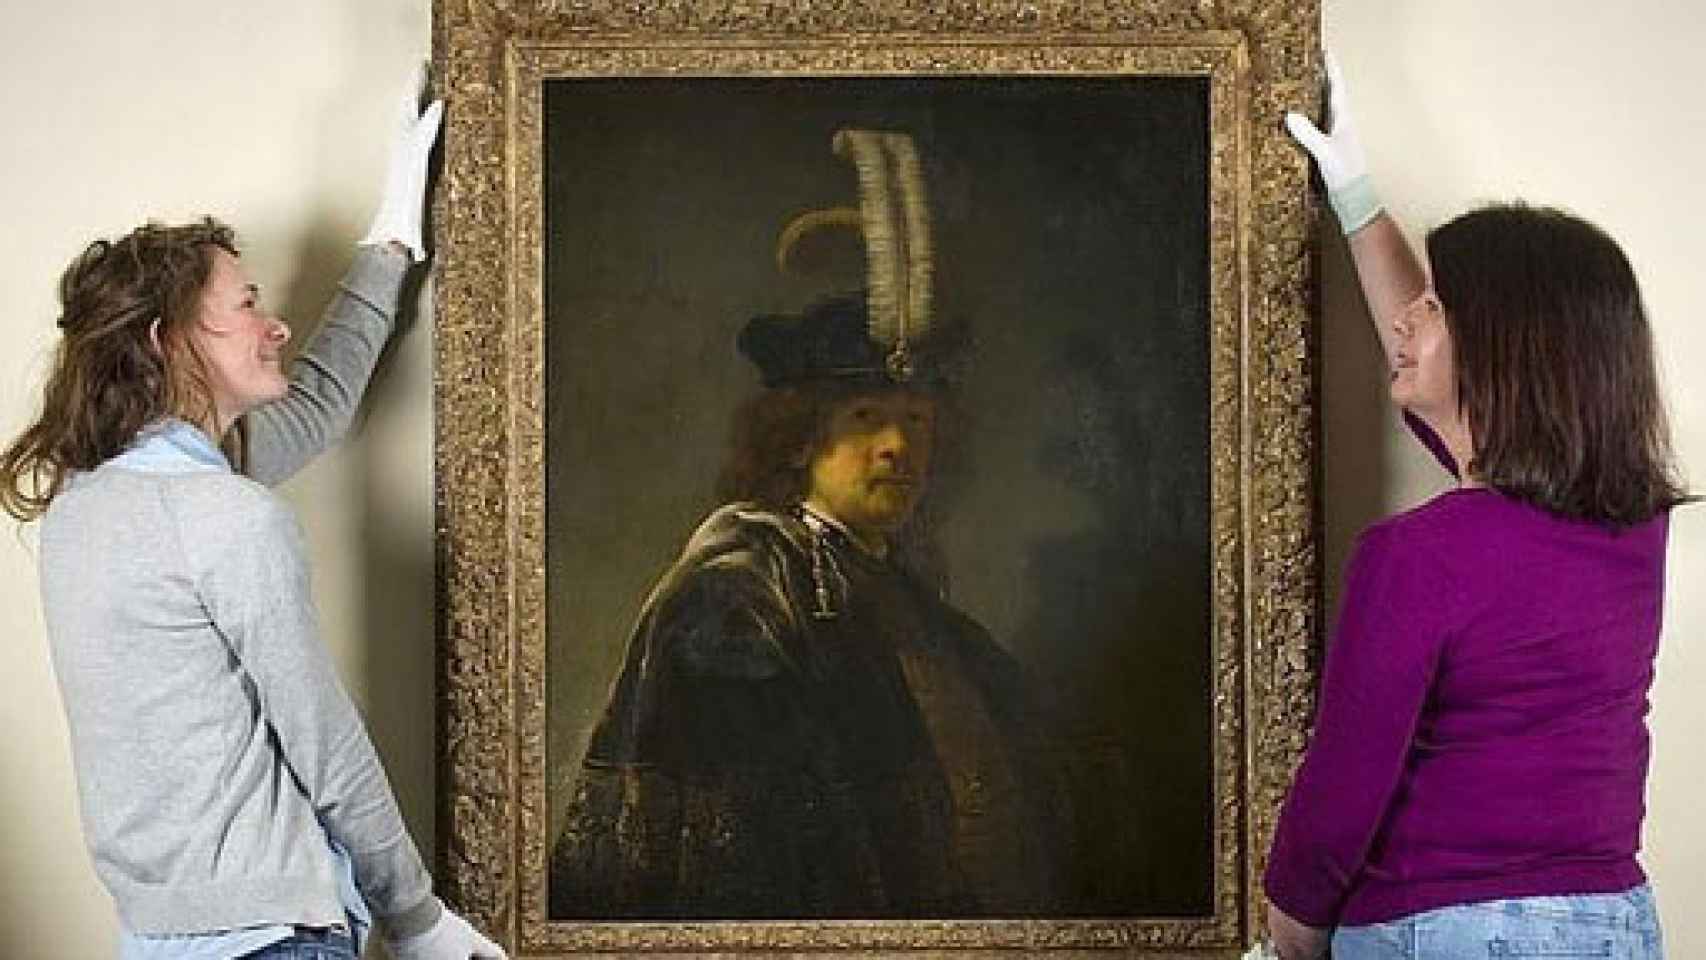 Image: Declaran auténtico un cuestionado retrato de Rembrandt